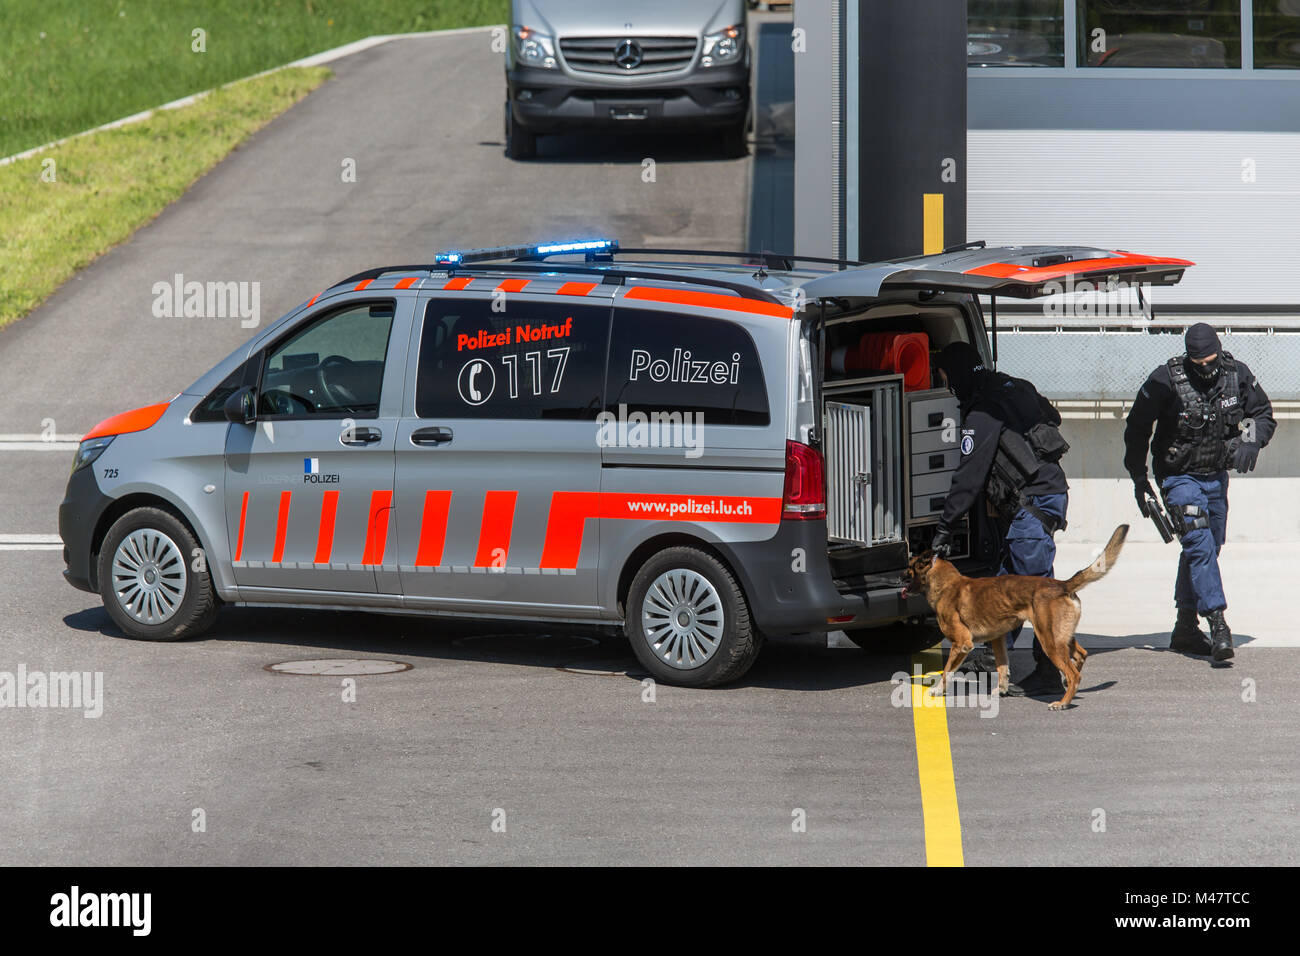 Polizeiauto mit Sondergruppe Luchs von der Luzerner Polizei Foto Stock